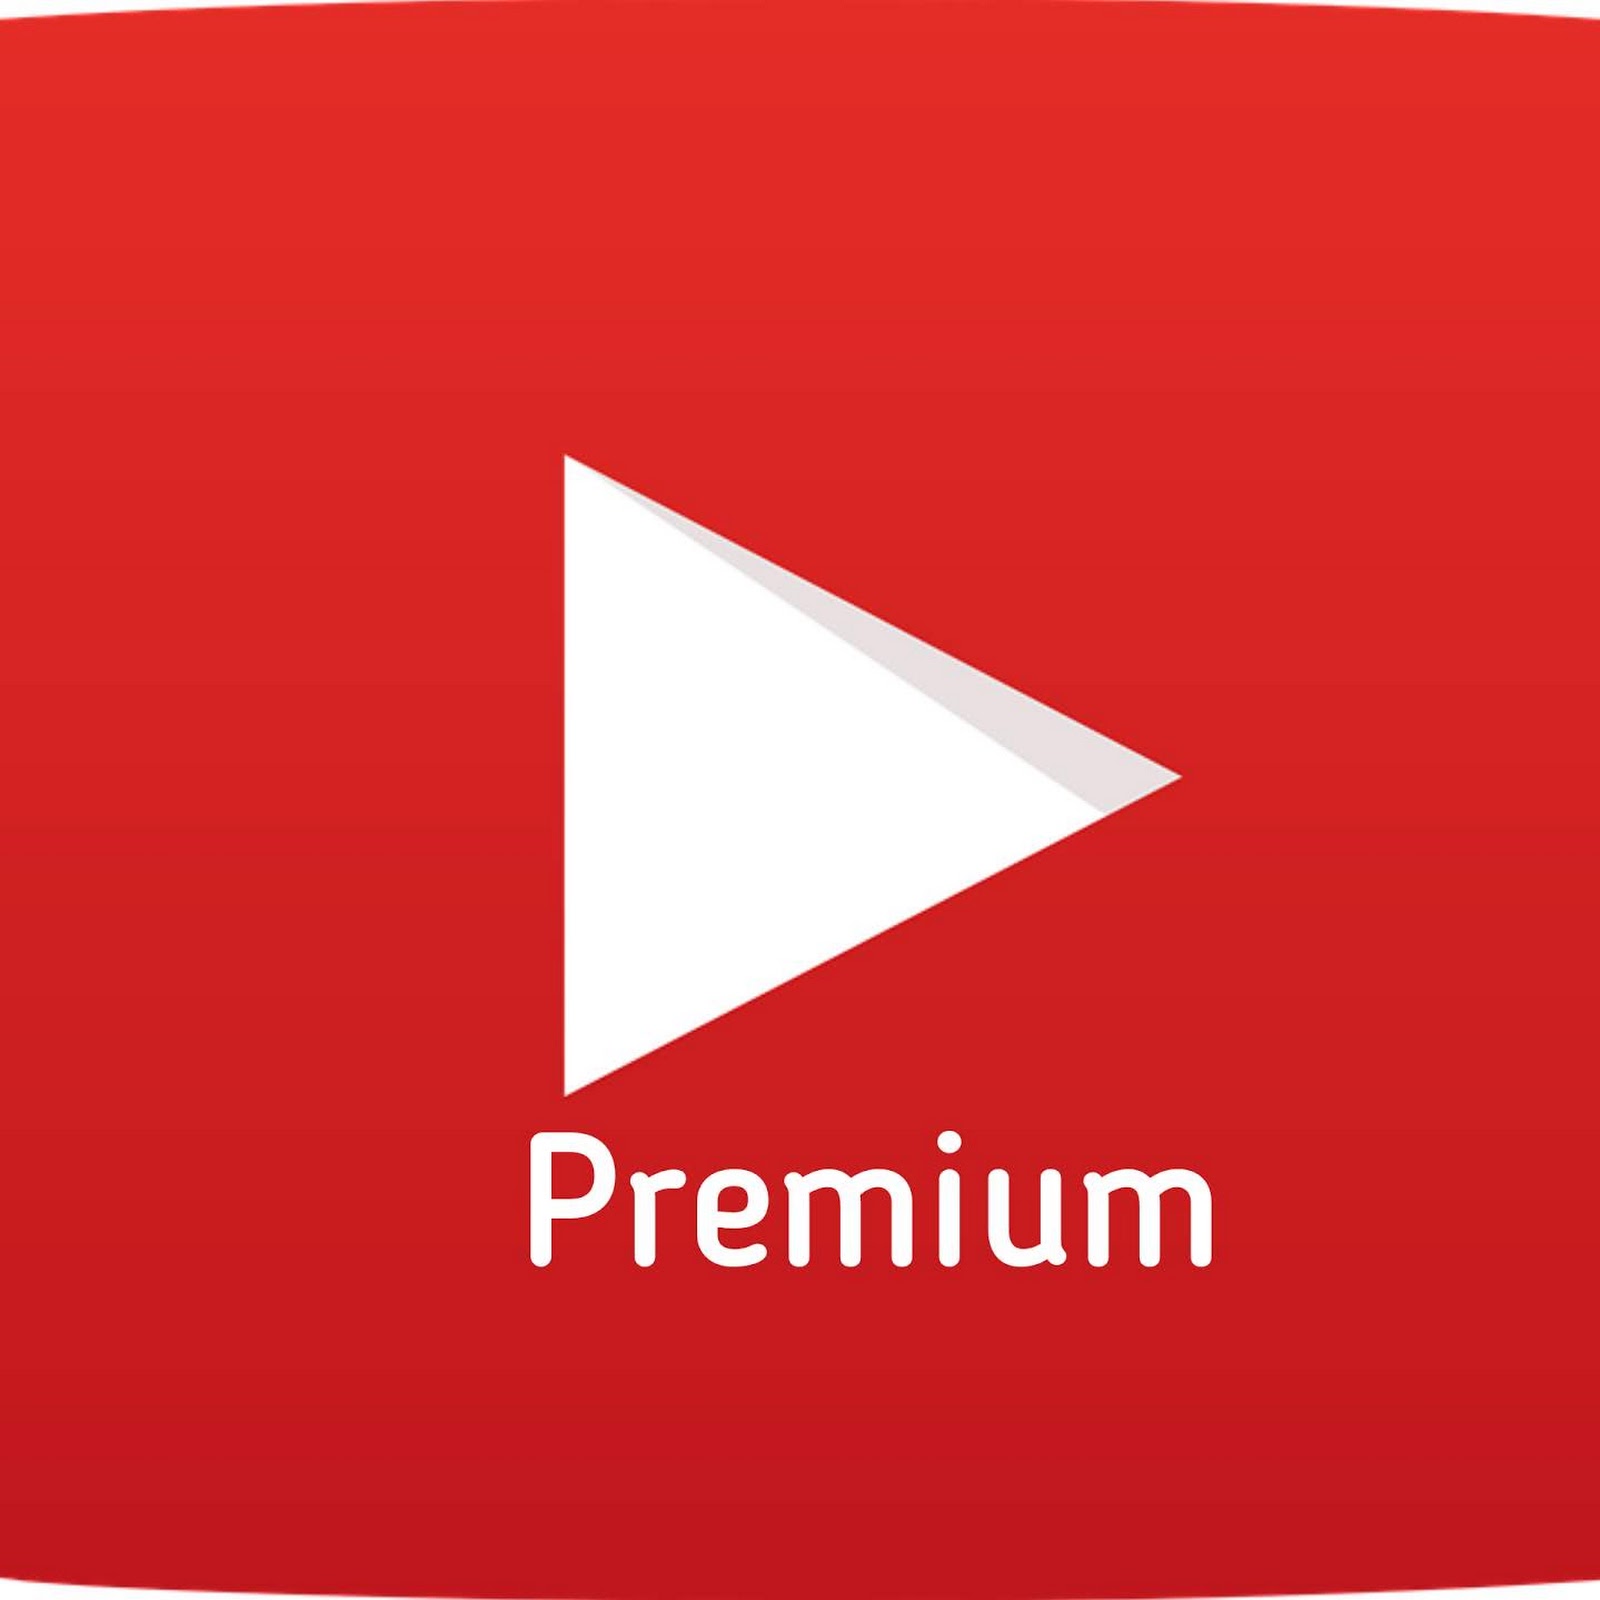 Ютуб премиум без рекламы на андроид последняя. Youtube Premium. Ютуб премиум. Подписка youtube Premium. Youtube Premium APK.